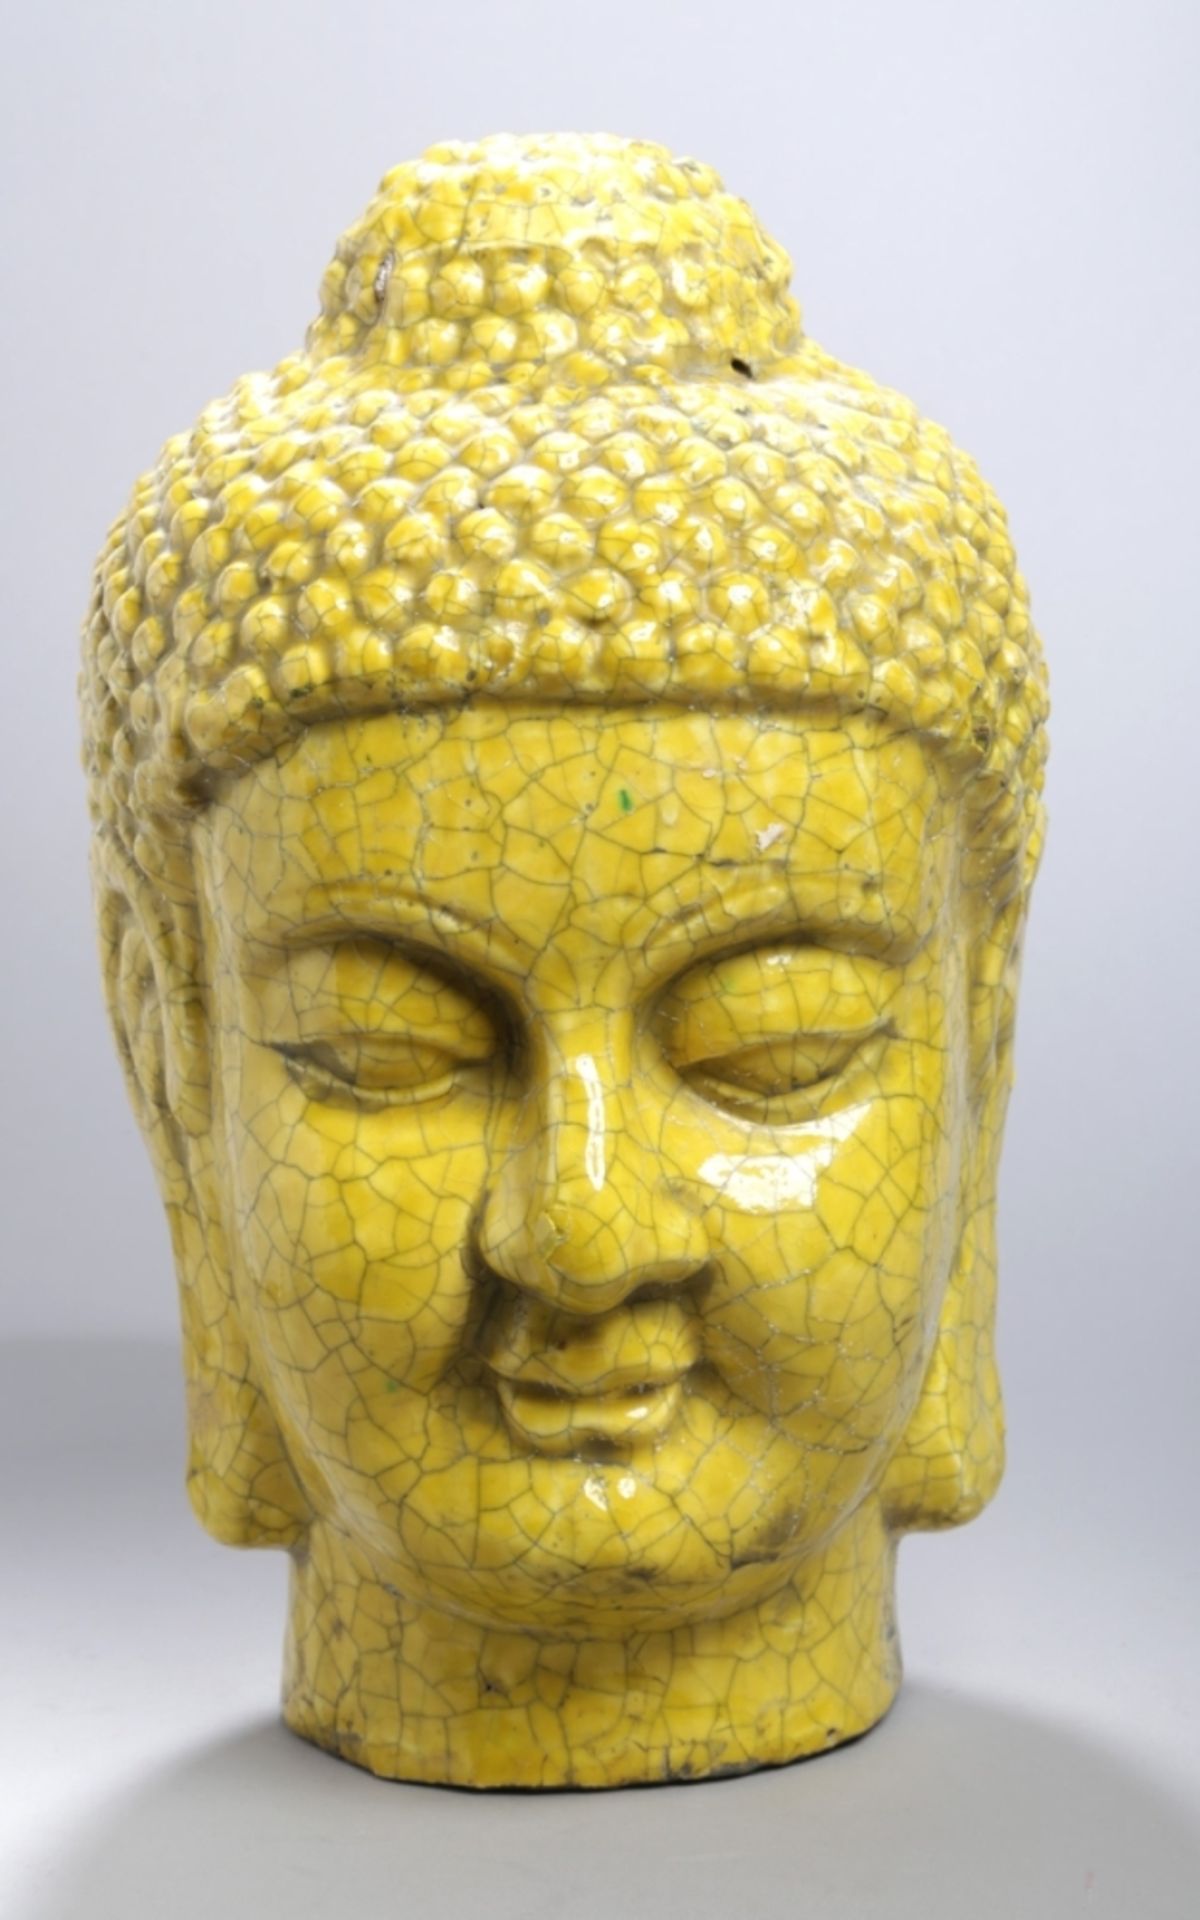 Keramik-Buddhakopf, Asien, 2. Hälfte 20. Jh., vollplastische Darstellung, gelb lasiert,mit Craq